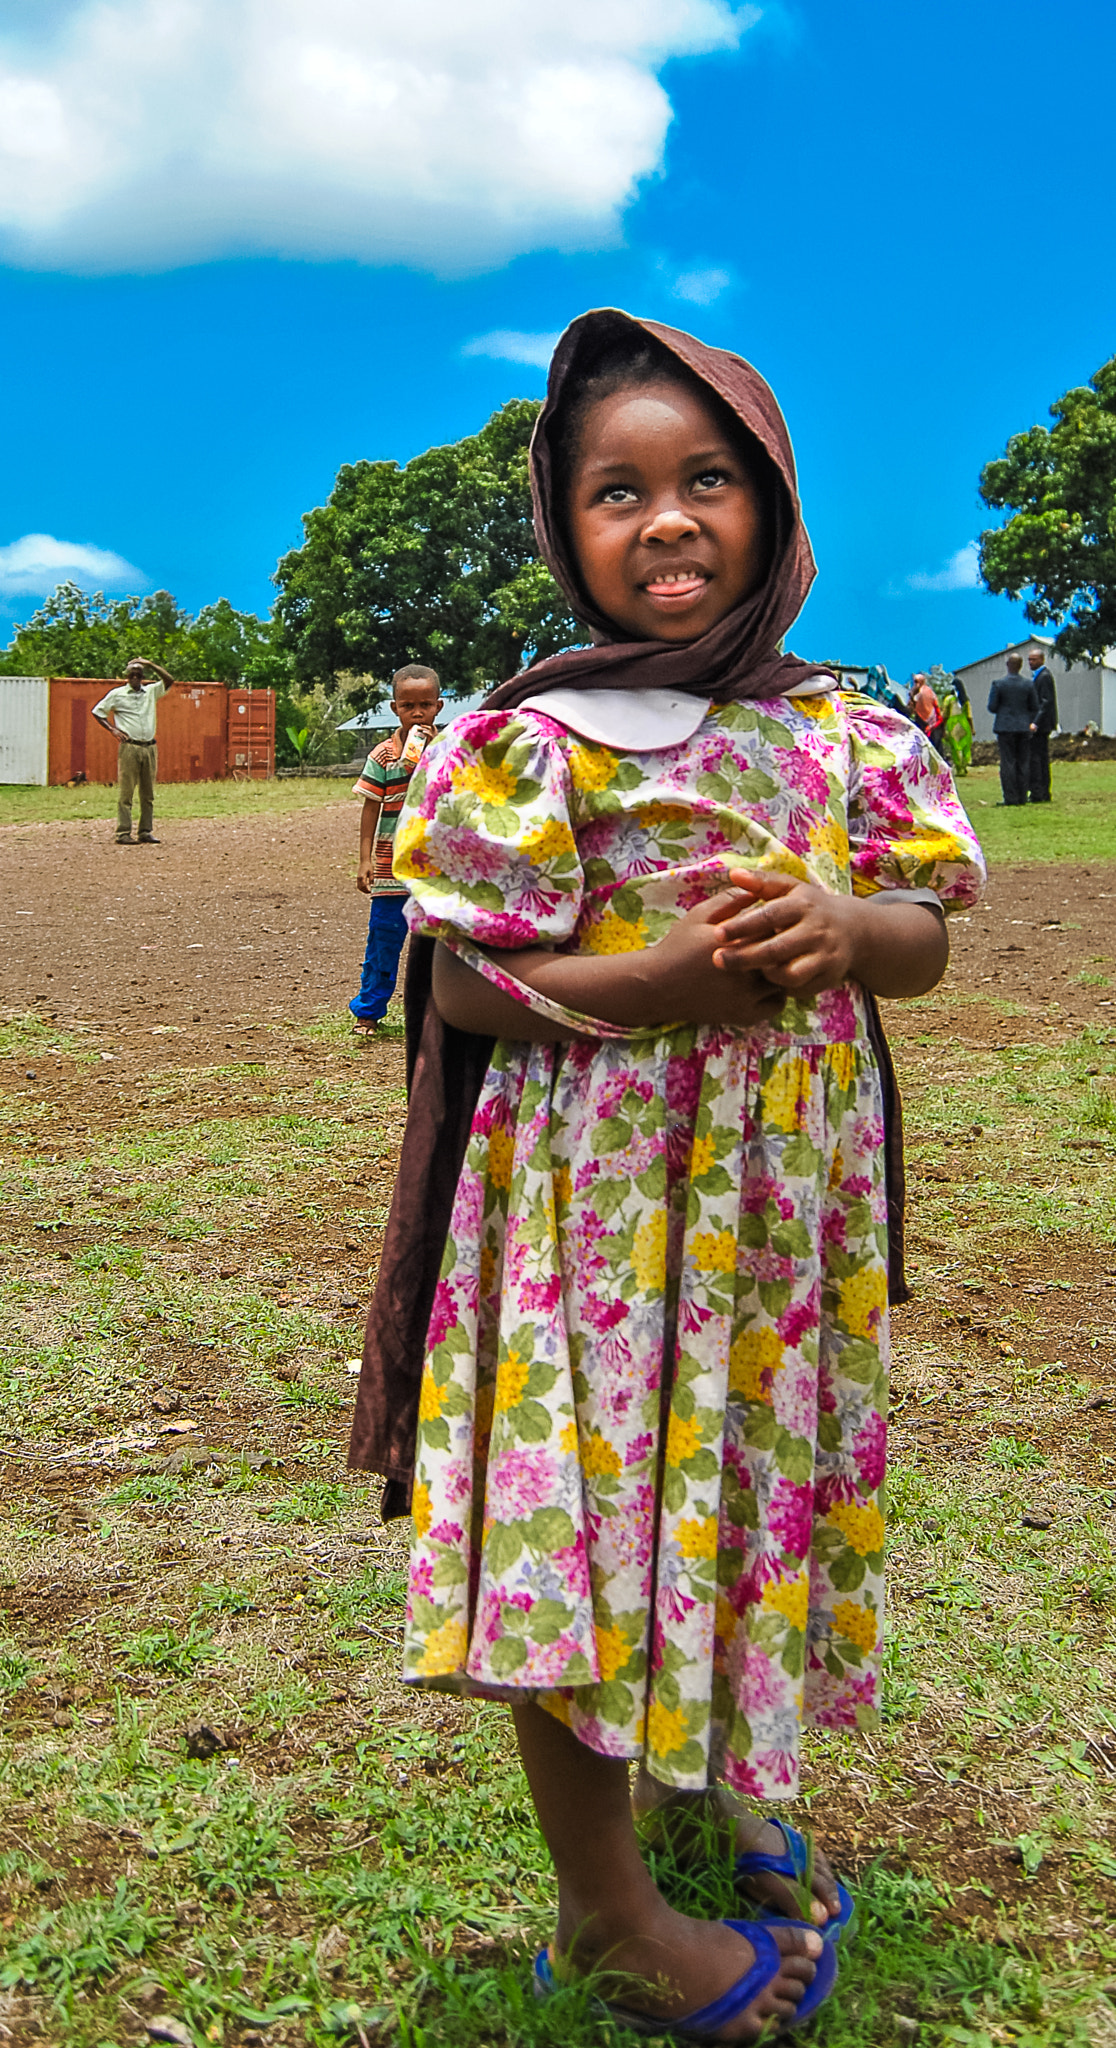 Nikon D3000 + AF-S DX Zoom-Nikkor 18-55mm f/3.5-5.6G ED sample photo. Mtsamodou region village girl photography